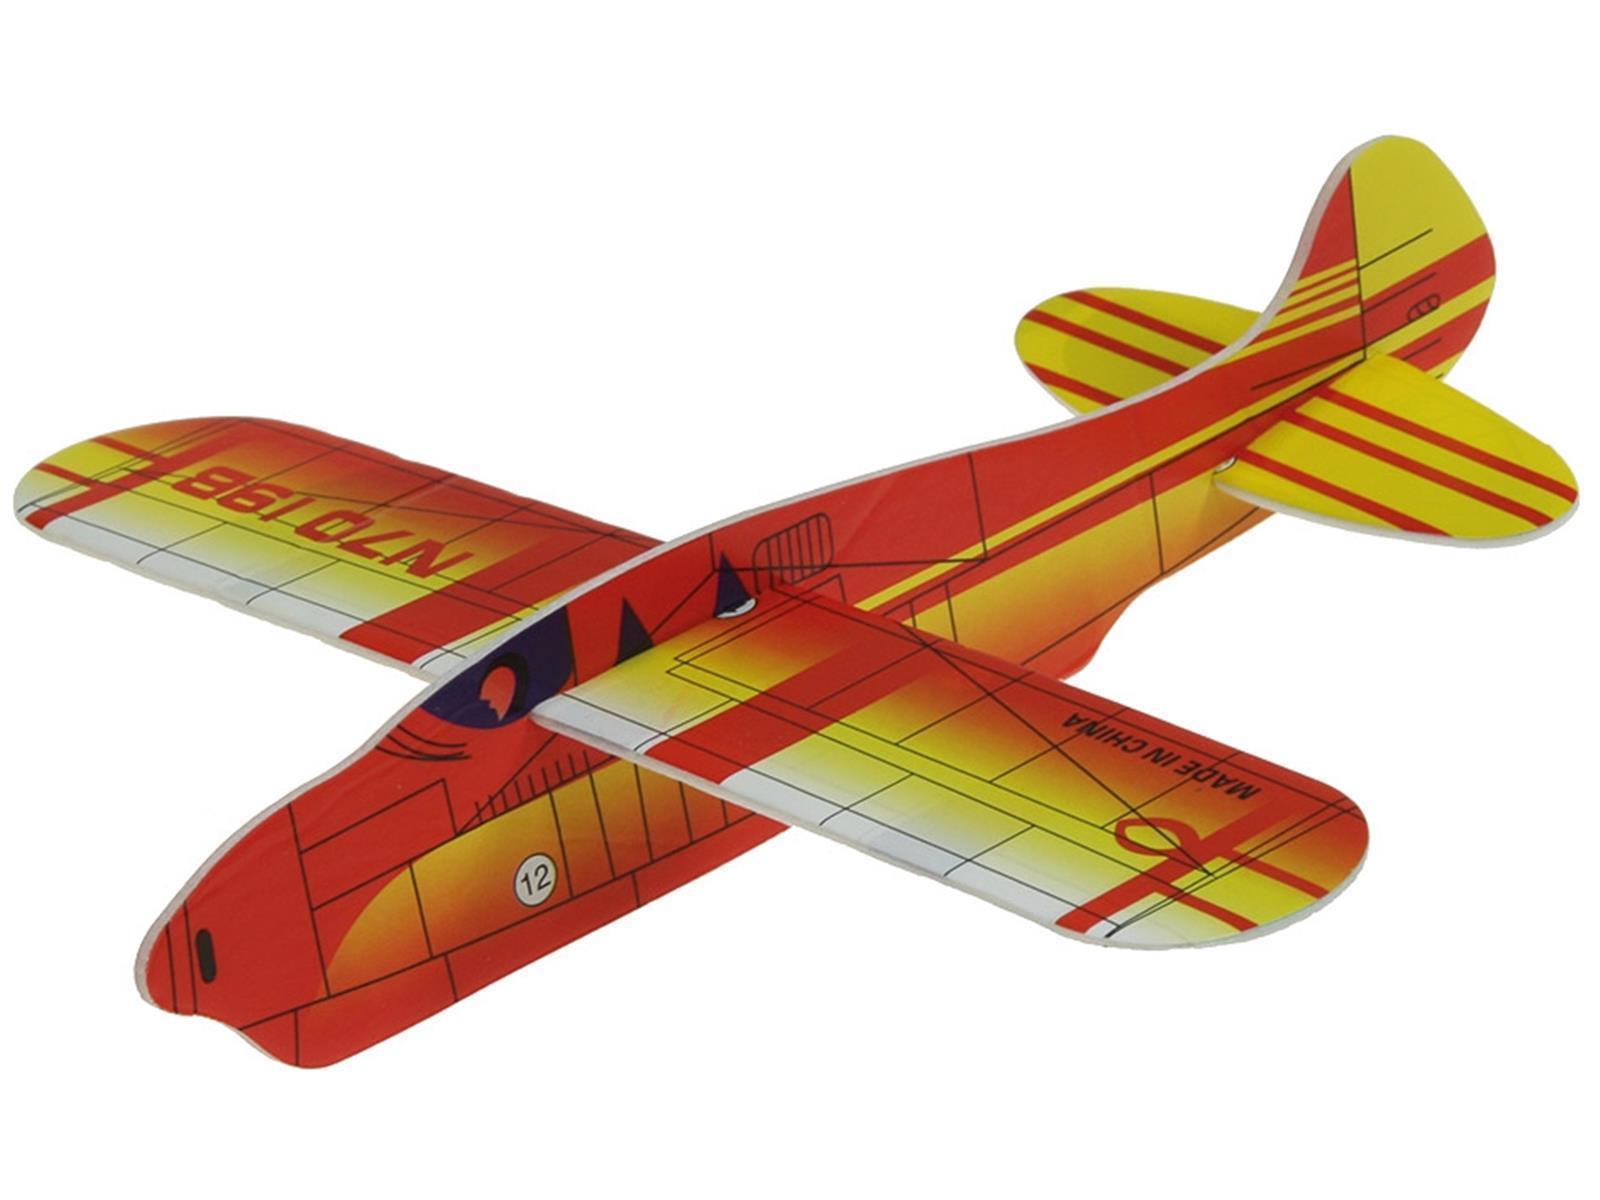 Styropor-Flugzeug, ca. 17cmverschiedene Farben, unsortiert